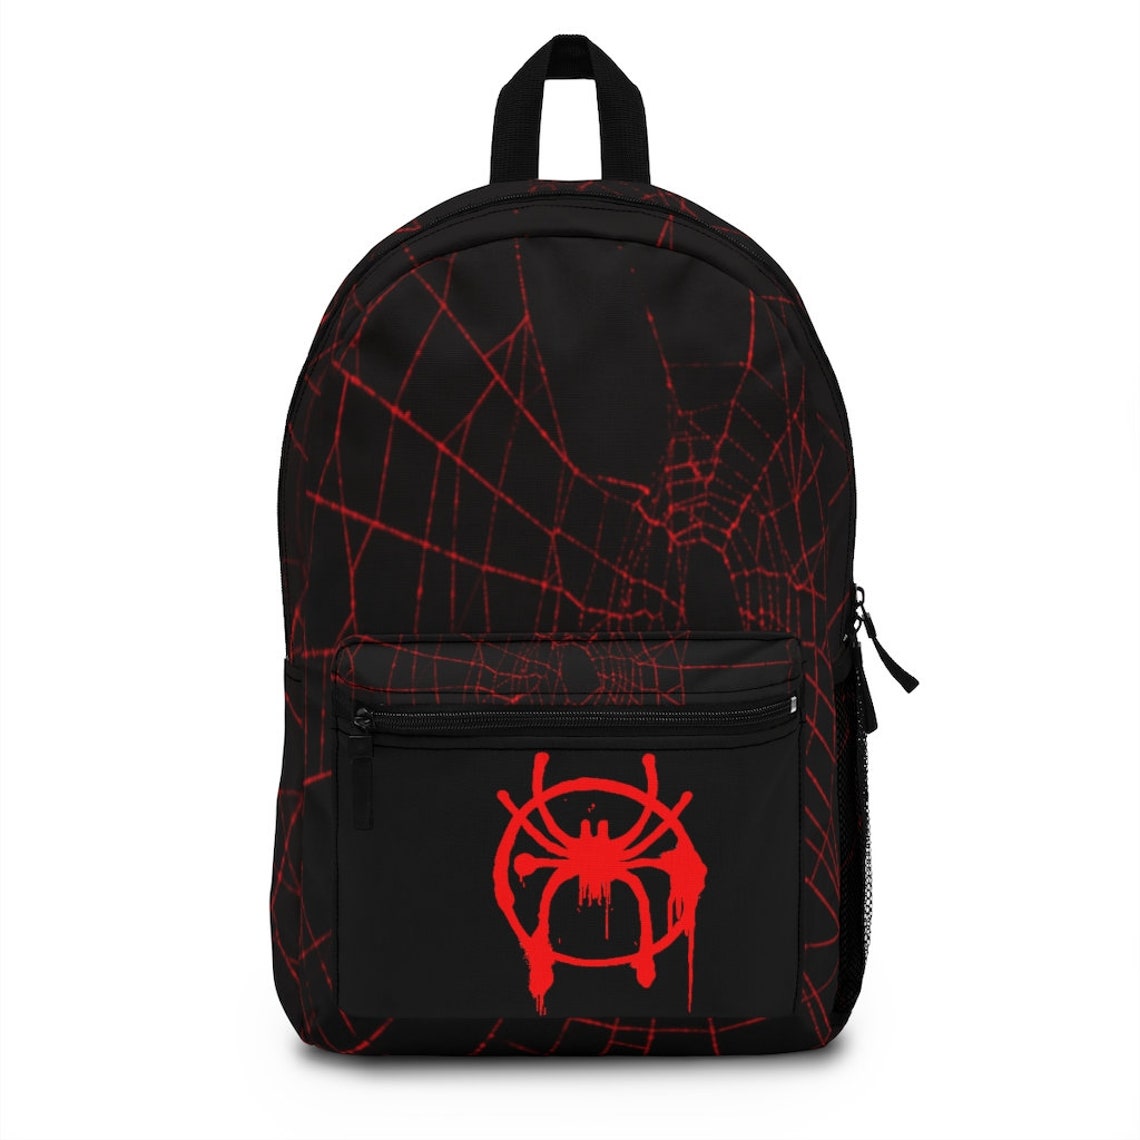 Miles Morales Backpack school backpack Spiderman bookbag | Etsy